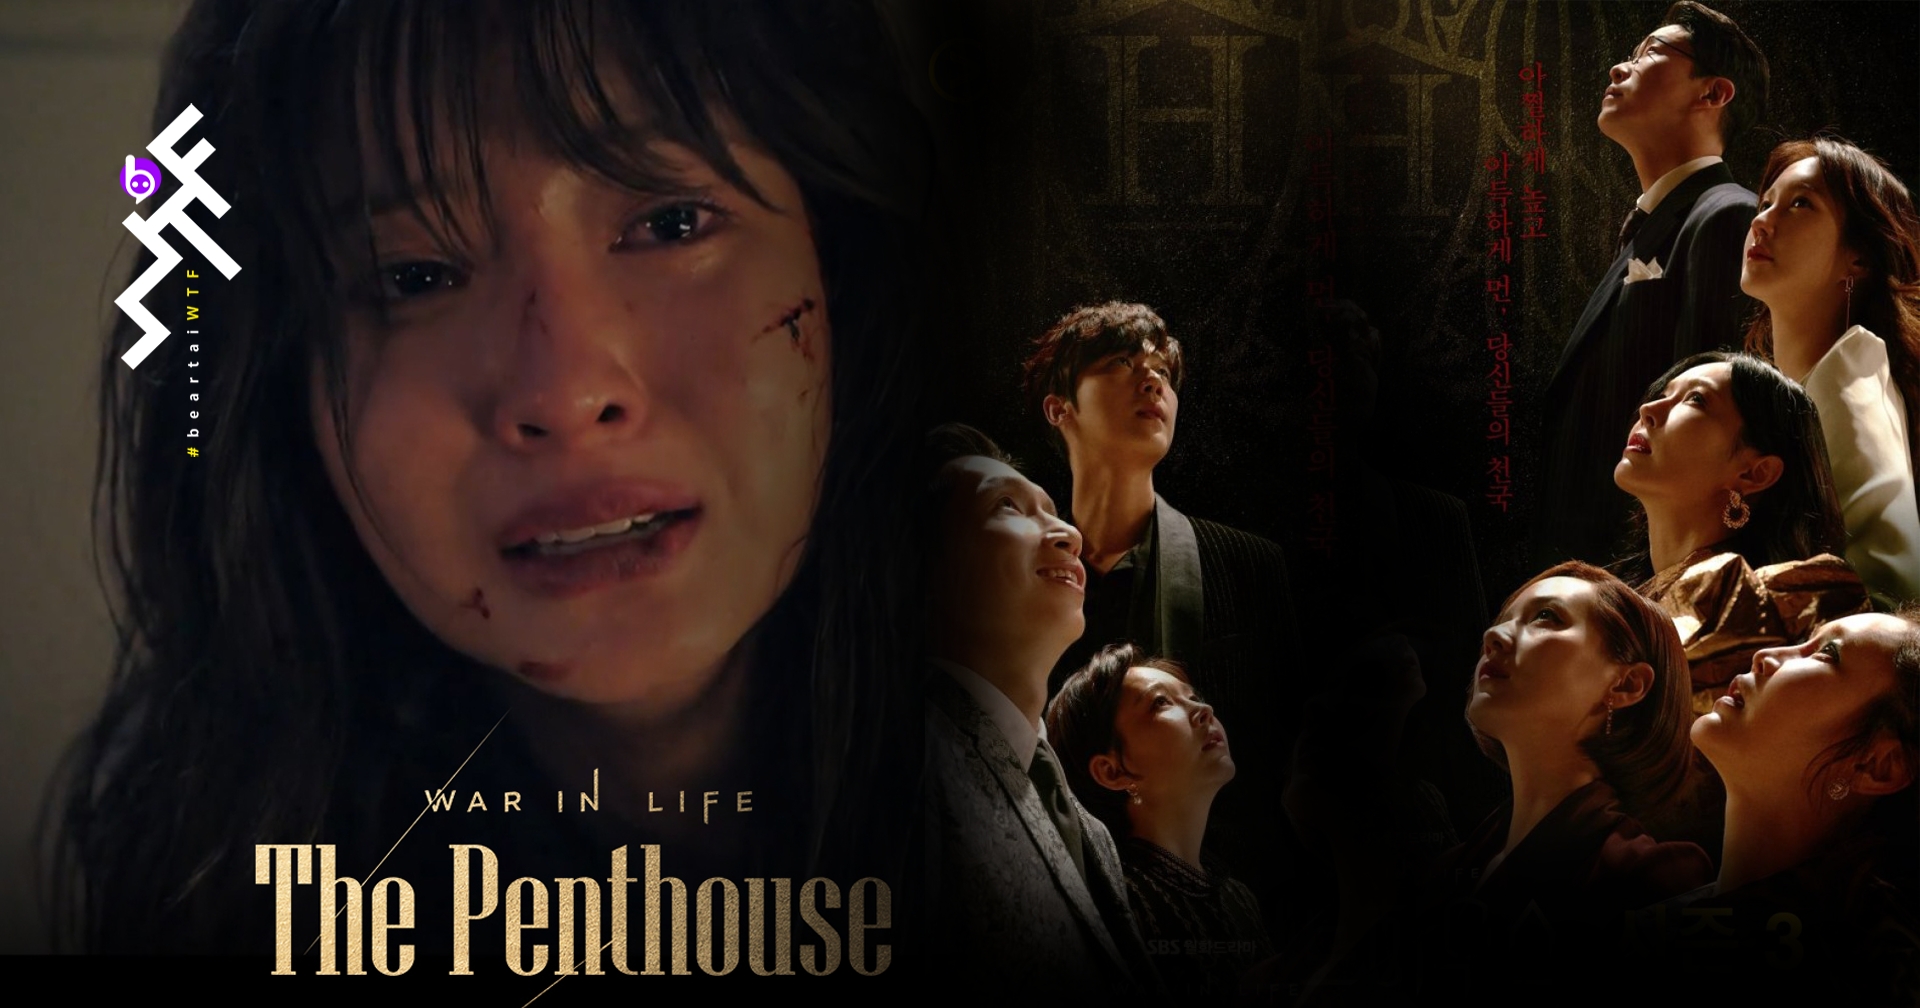 ปิดฉาก The Penthouse SS1 ดราม่าเข้มข้น ที่ต้องลุ้นจนฉากสุดท้าย "ใครยังไม่ดู รีบเลย"